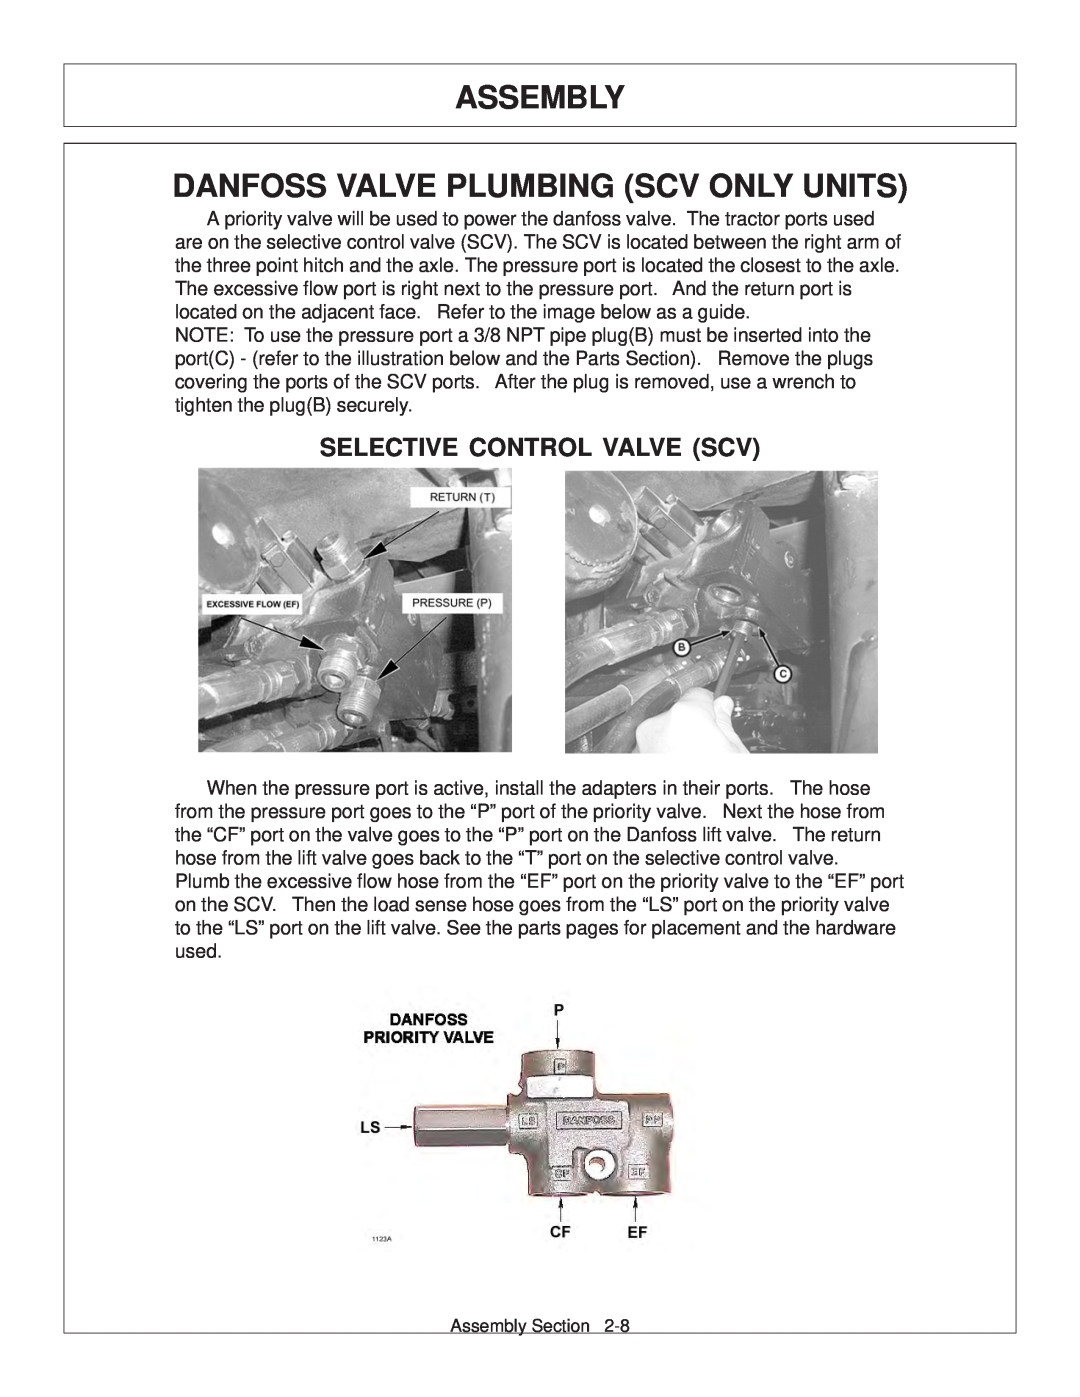 Tiger Products Co., Ltd JD 5101E, JD 5083E Assembly Danfoss Valve Plumbing Scv Only Units, Selective Control Valve Scv 